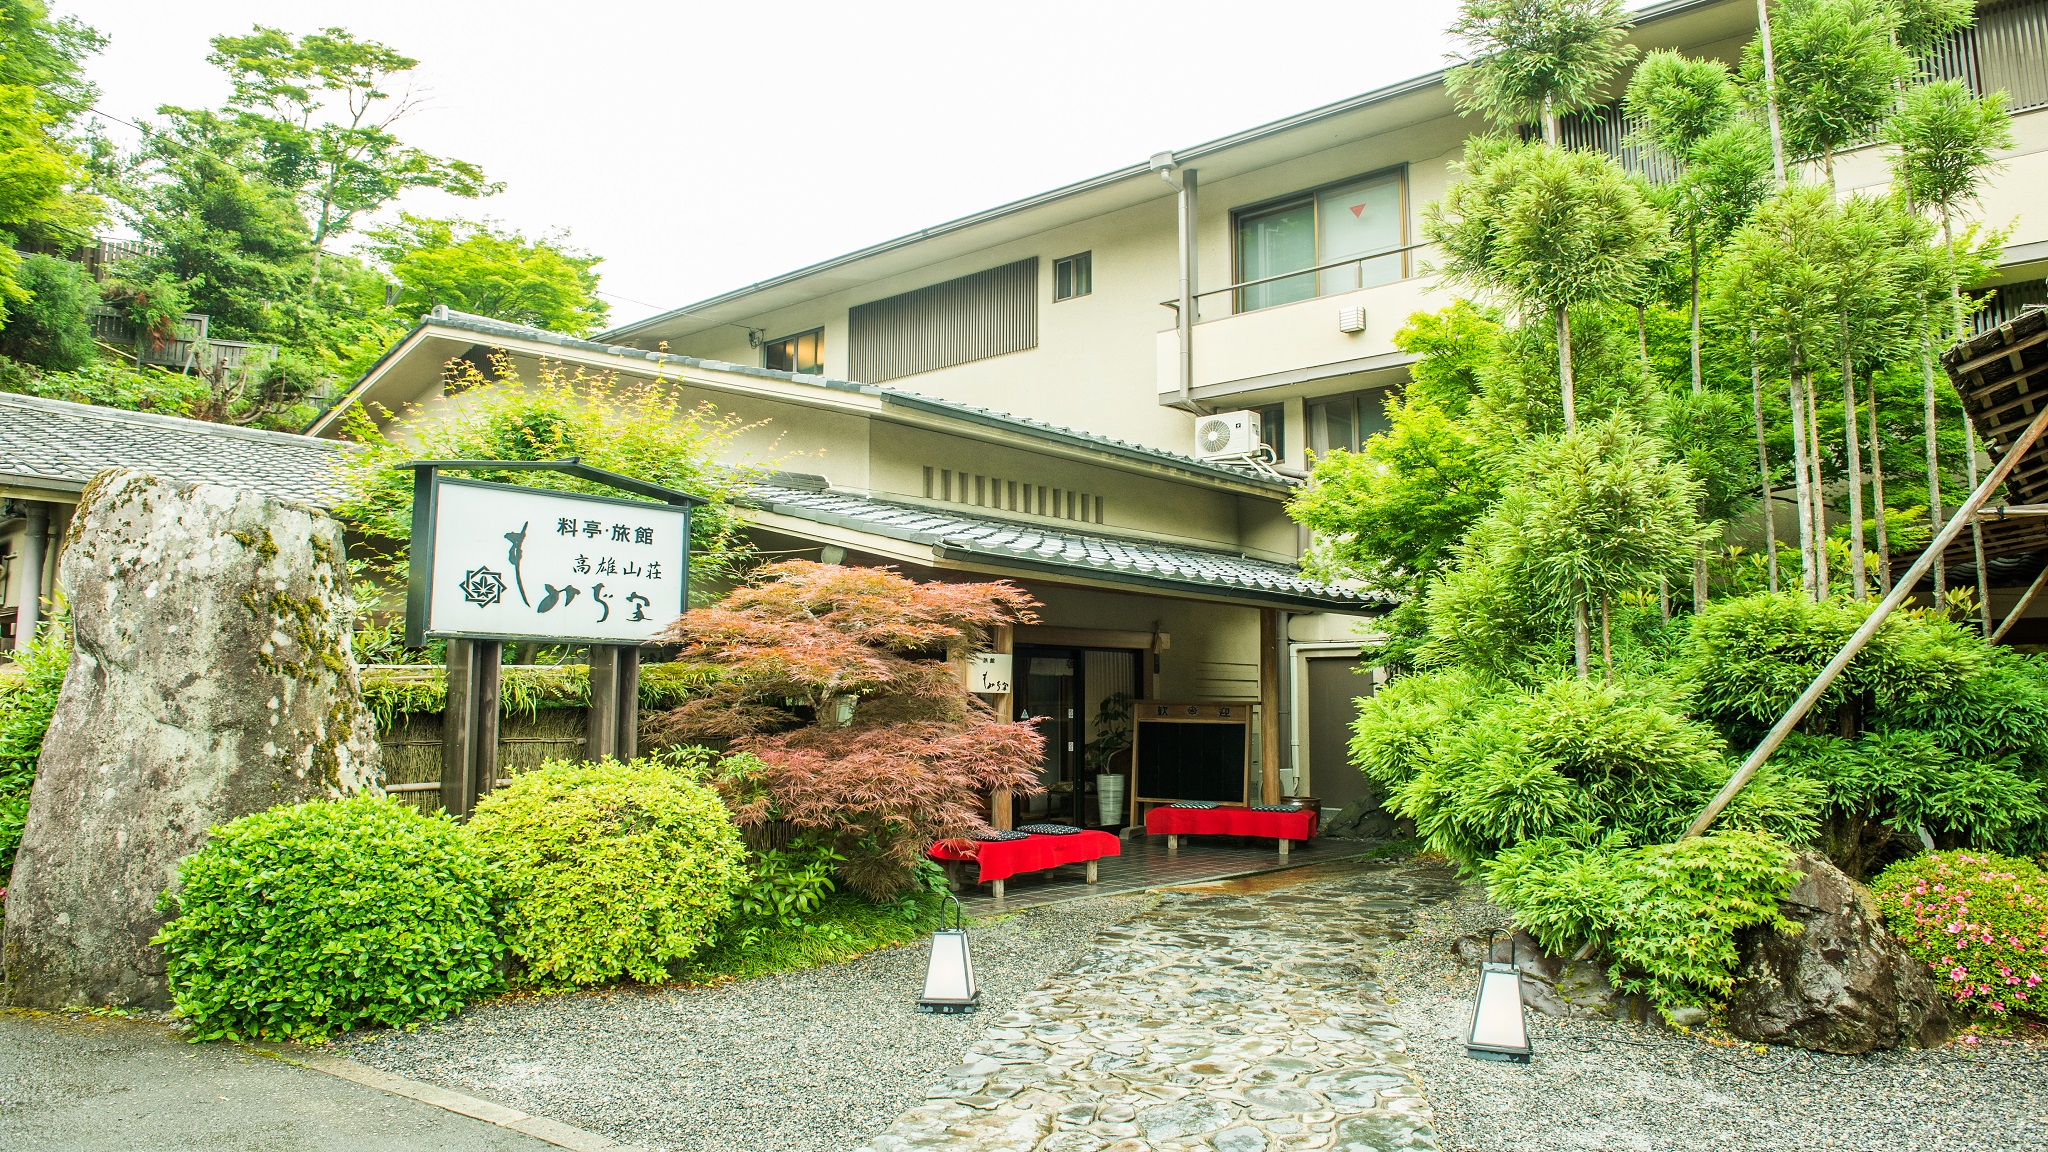 義両親の金婚式のお祝いで紅葉の京都旅行を計画中です。1泊4人で10万円以内でお勧めの宿を教えてください。